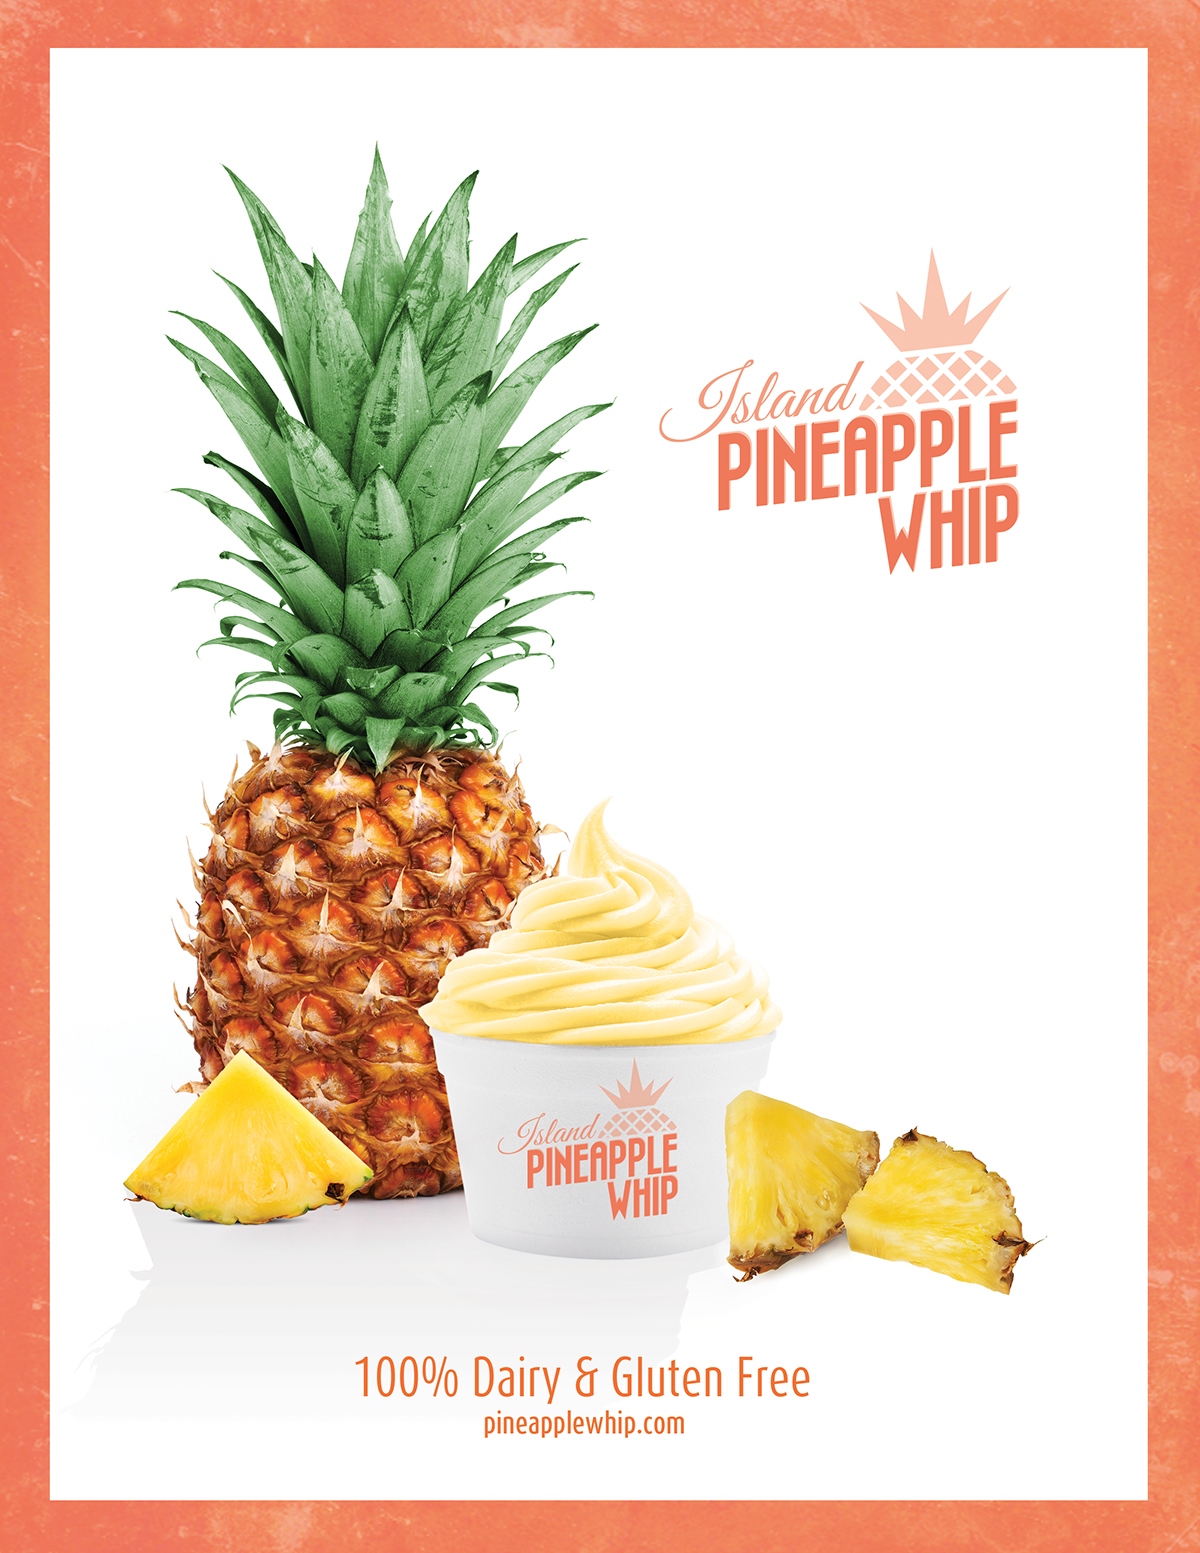 #pineapple #whip #frozen